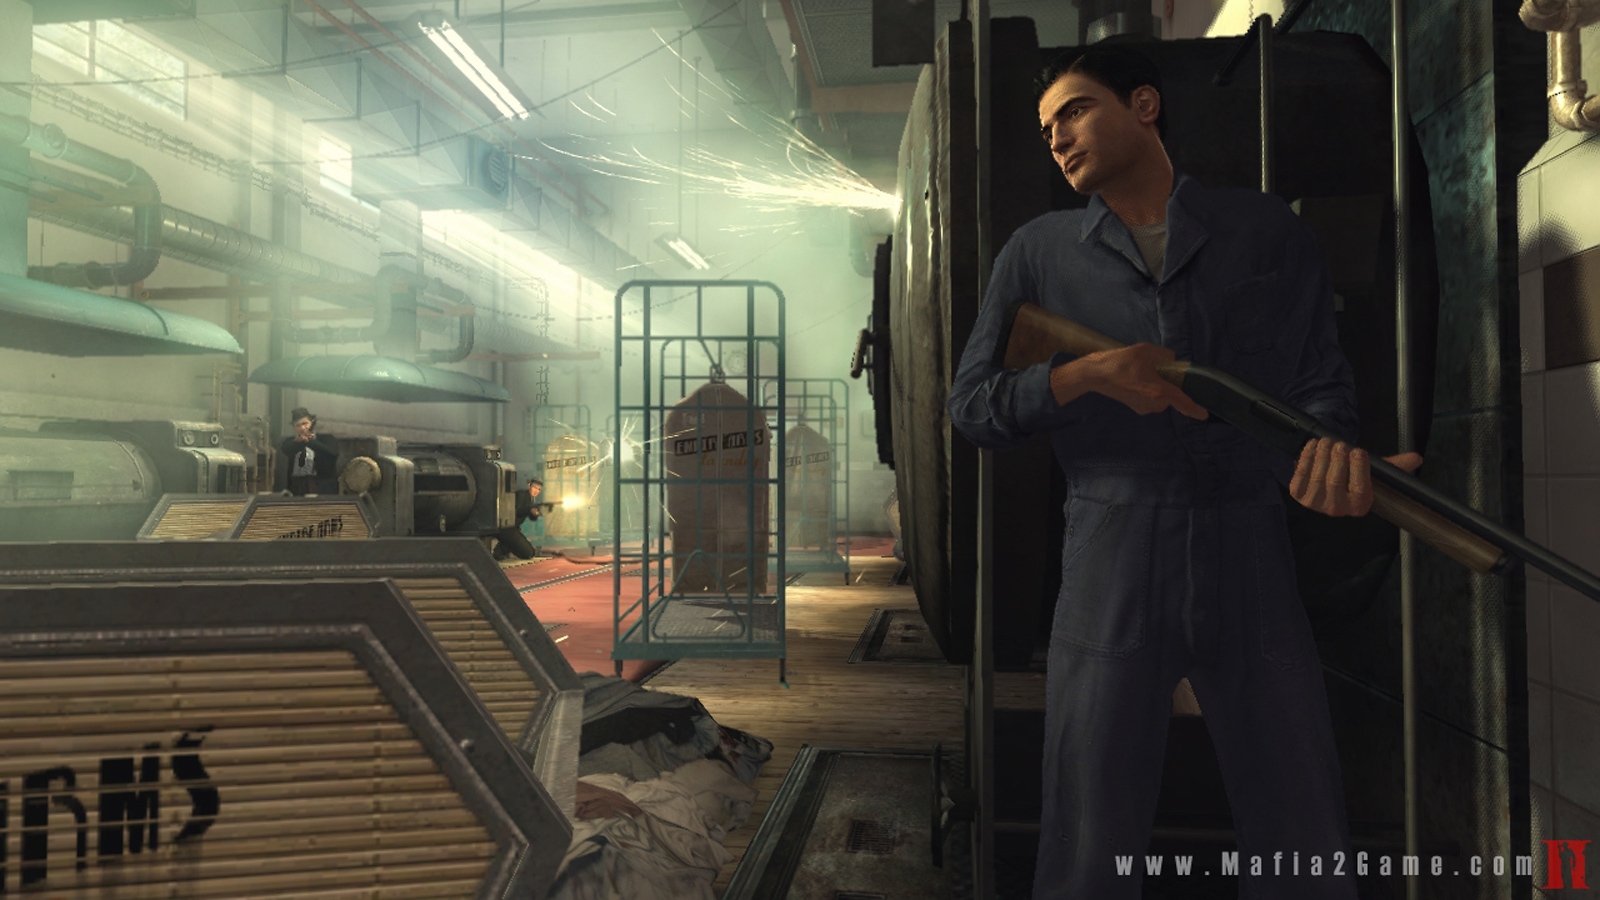 Скриншот из игры Mafia 2 под номером 23